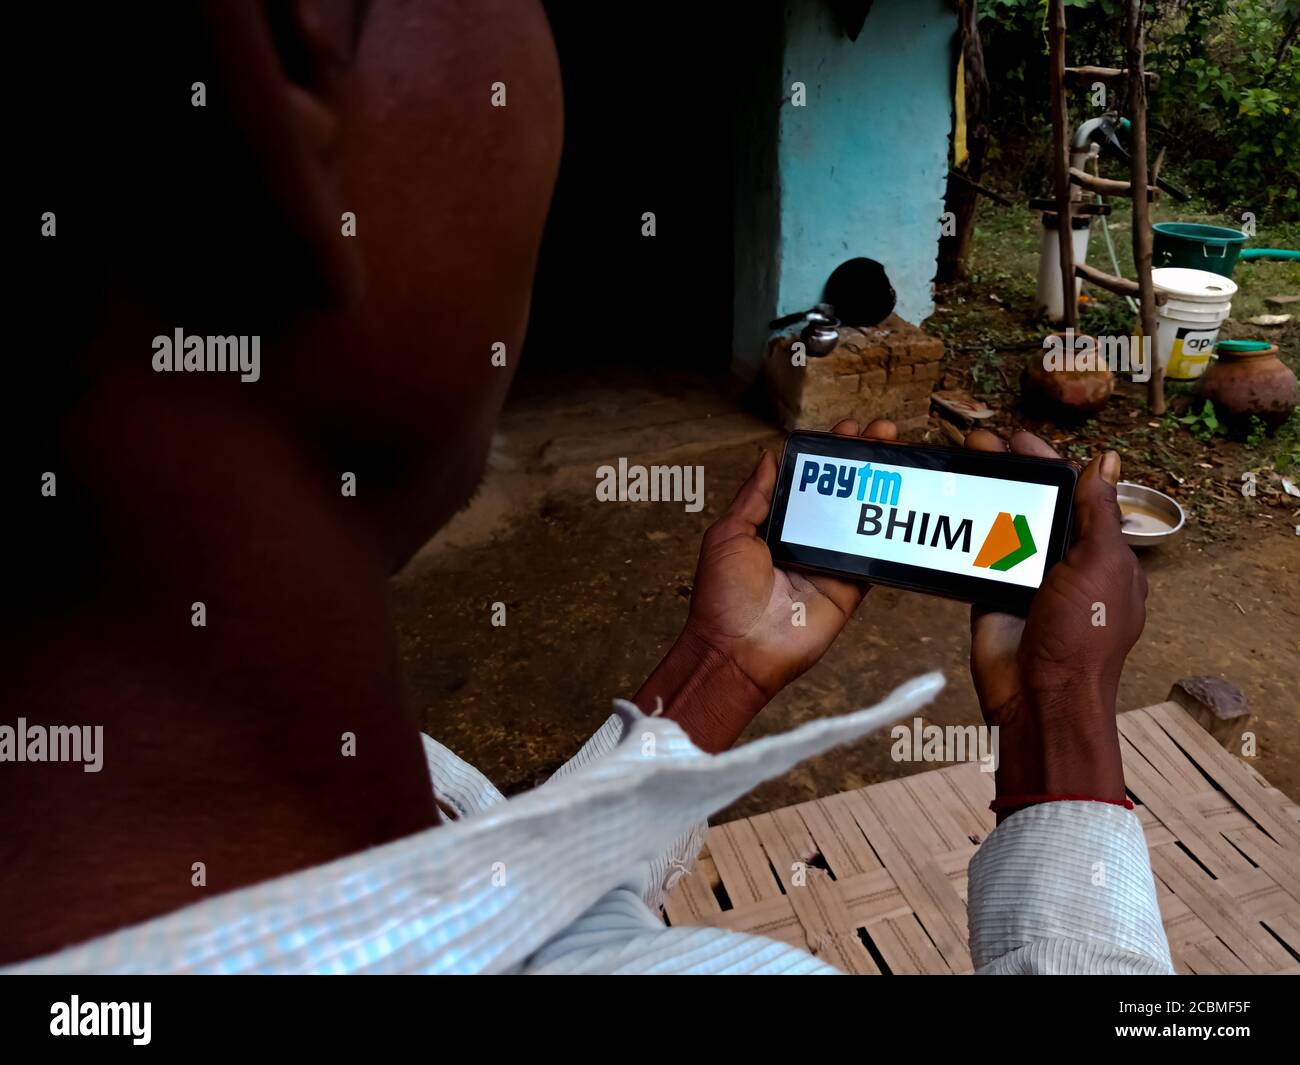 DISTRETTO KATNI, INDIA - 20 DICEMBRE 2019: BHIM UPI e il logo misto paytm presentato sullo schermo digitale del telefono intelligente da parte della gente del villaggio indiano mano holding Foto Stock